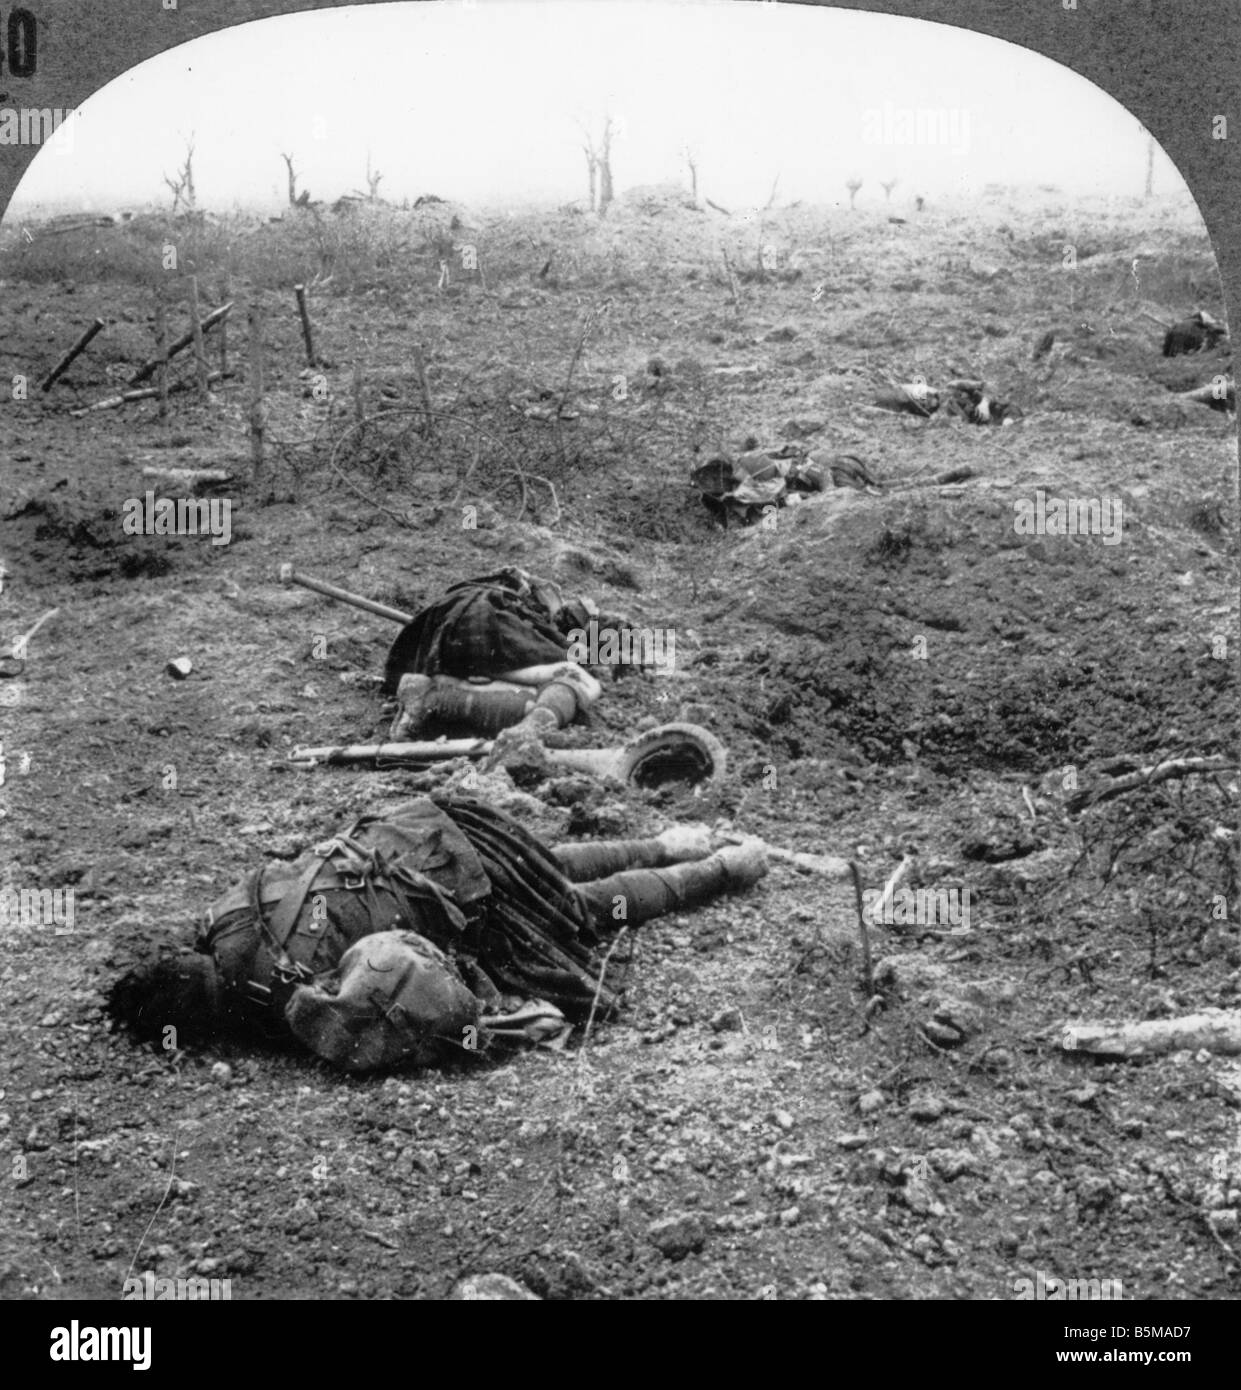 2 G55 W1 1917 20 WWI schottischen Soldaten getötet in Aktion Geschichte WWI Western Front Soldaten ein schottisches regiment getötet im Acti Stockfoto